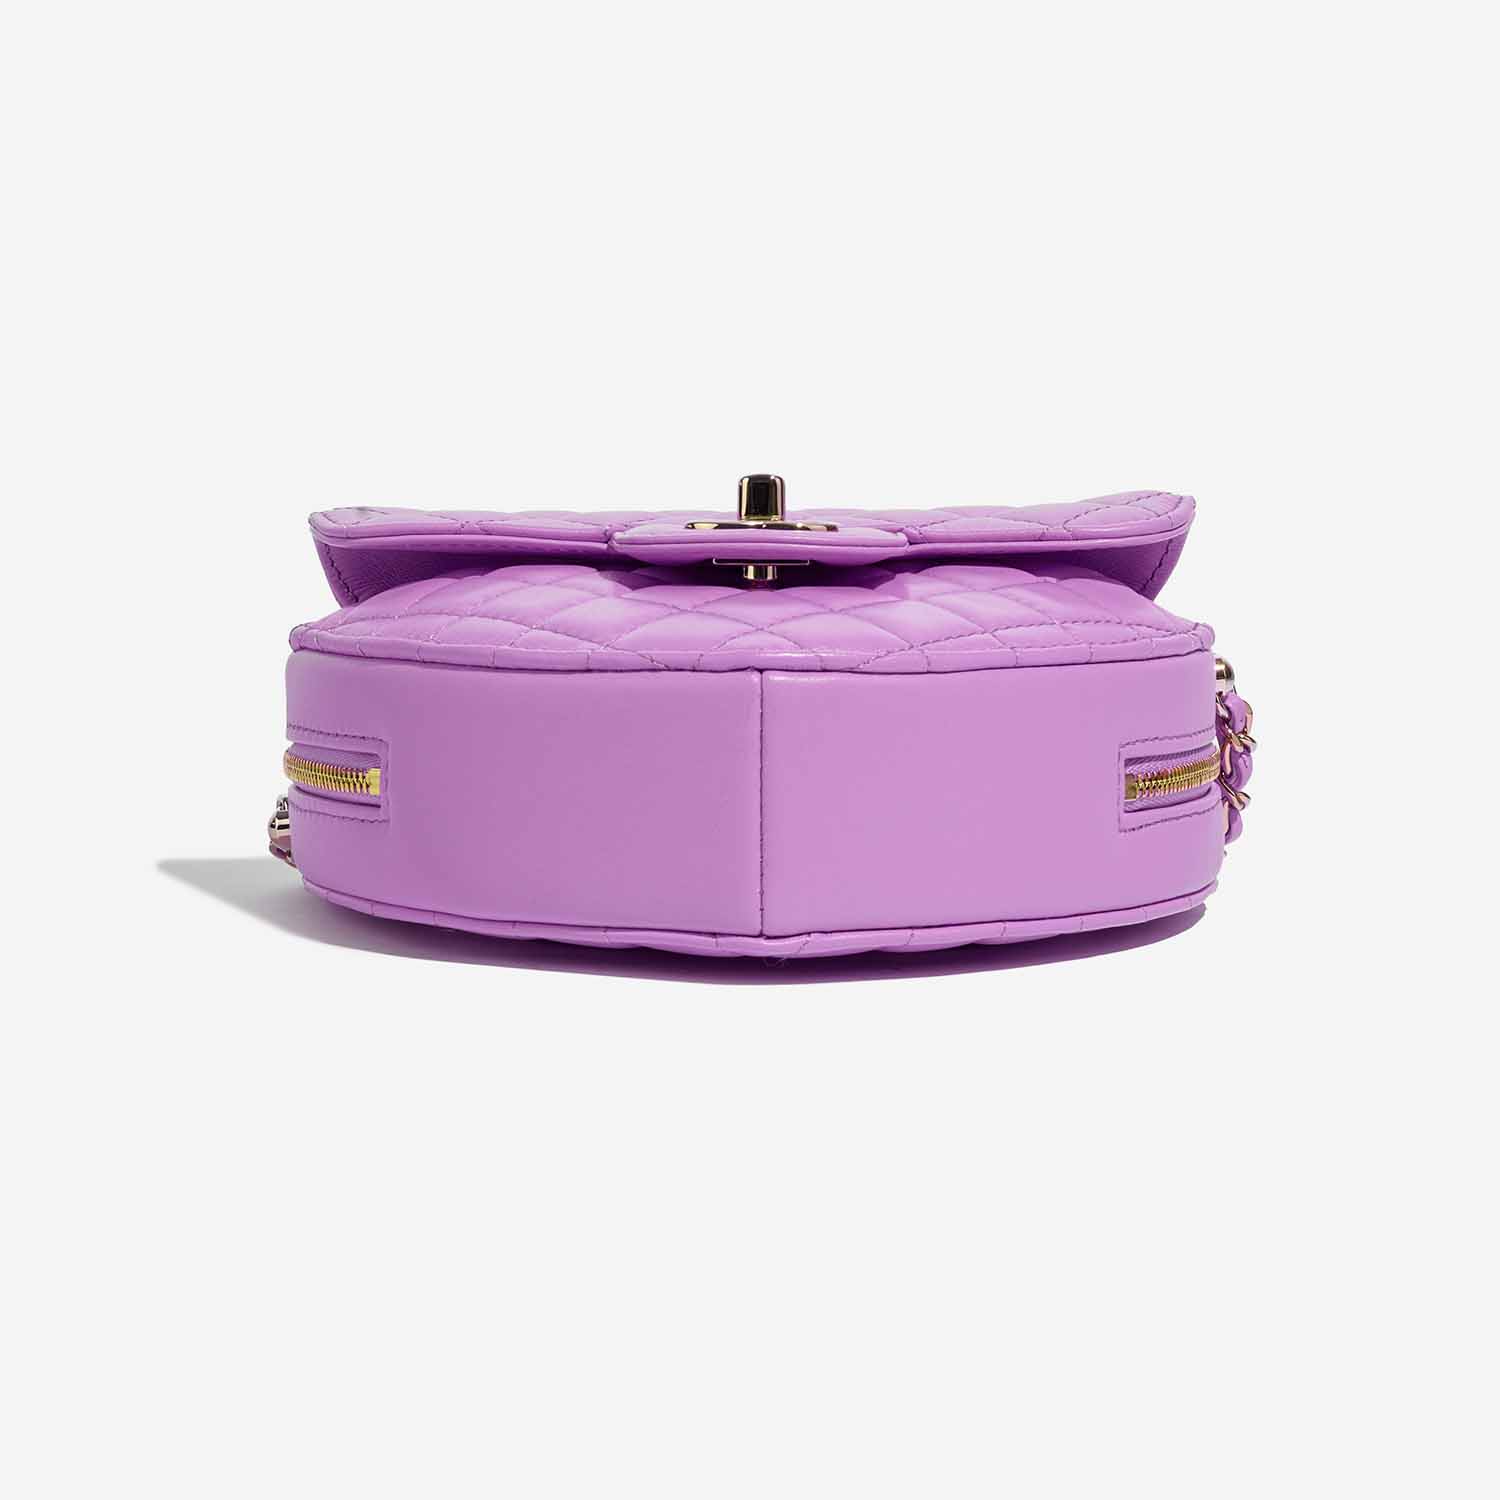 Chanel TimelessHeart Medium Violet Bottom | Verkaufen Sie Ihre Designer-Tasche auf Saclab.com